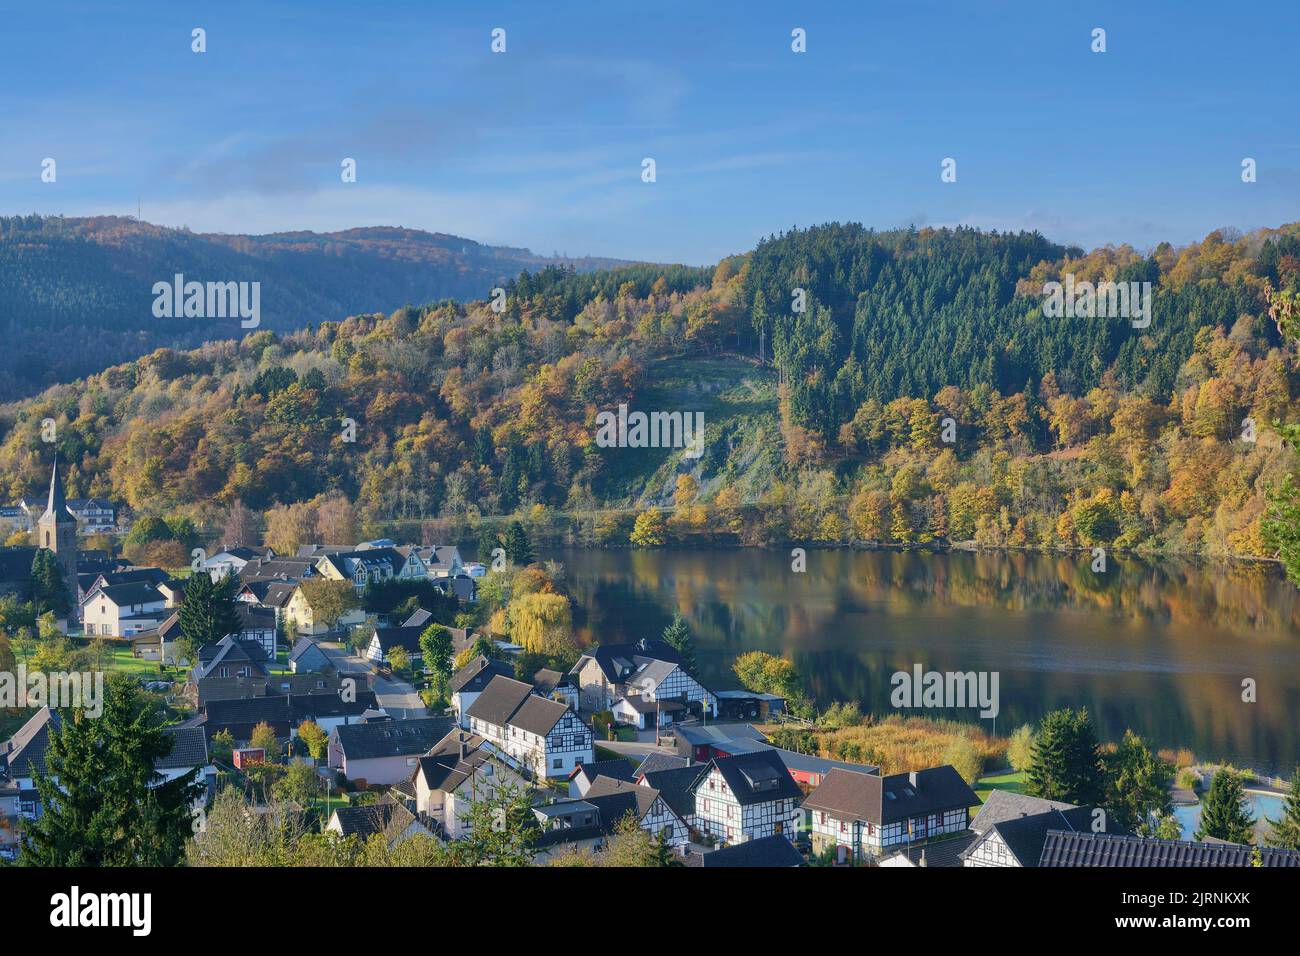 Dorf Einruhr,Rursee Stausee,Eifel,Deutschland Stockfoto